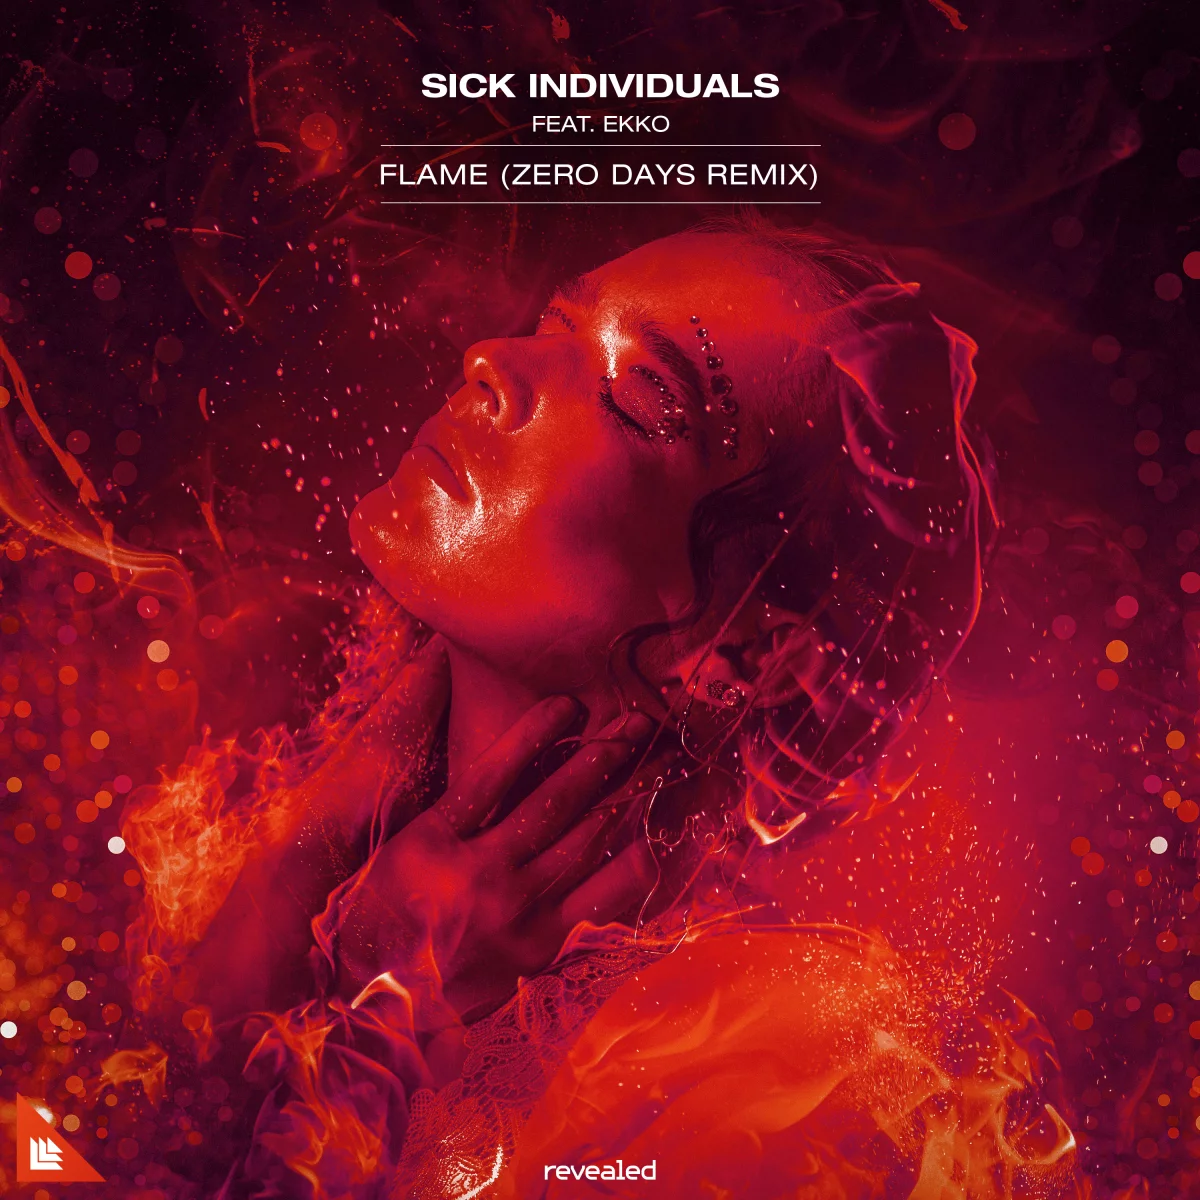 Flame (Zero Days Remix) - Sick Individuals⁠ feat. Ekko